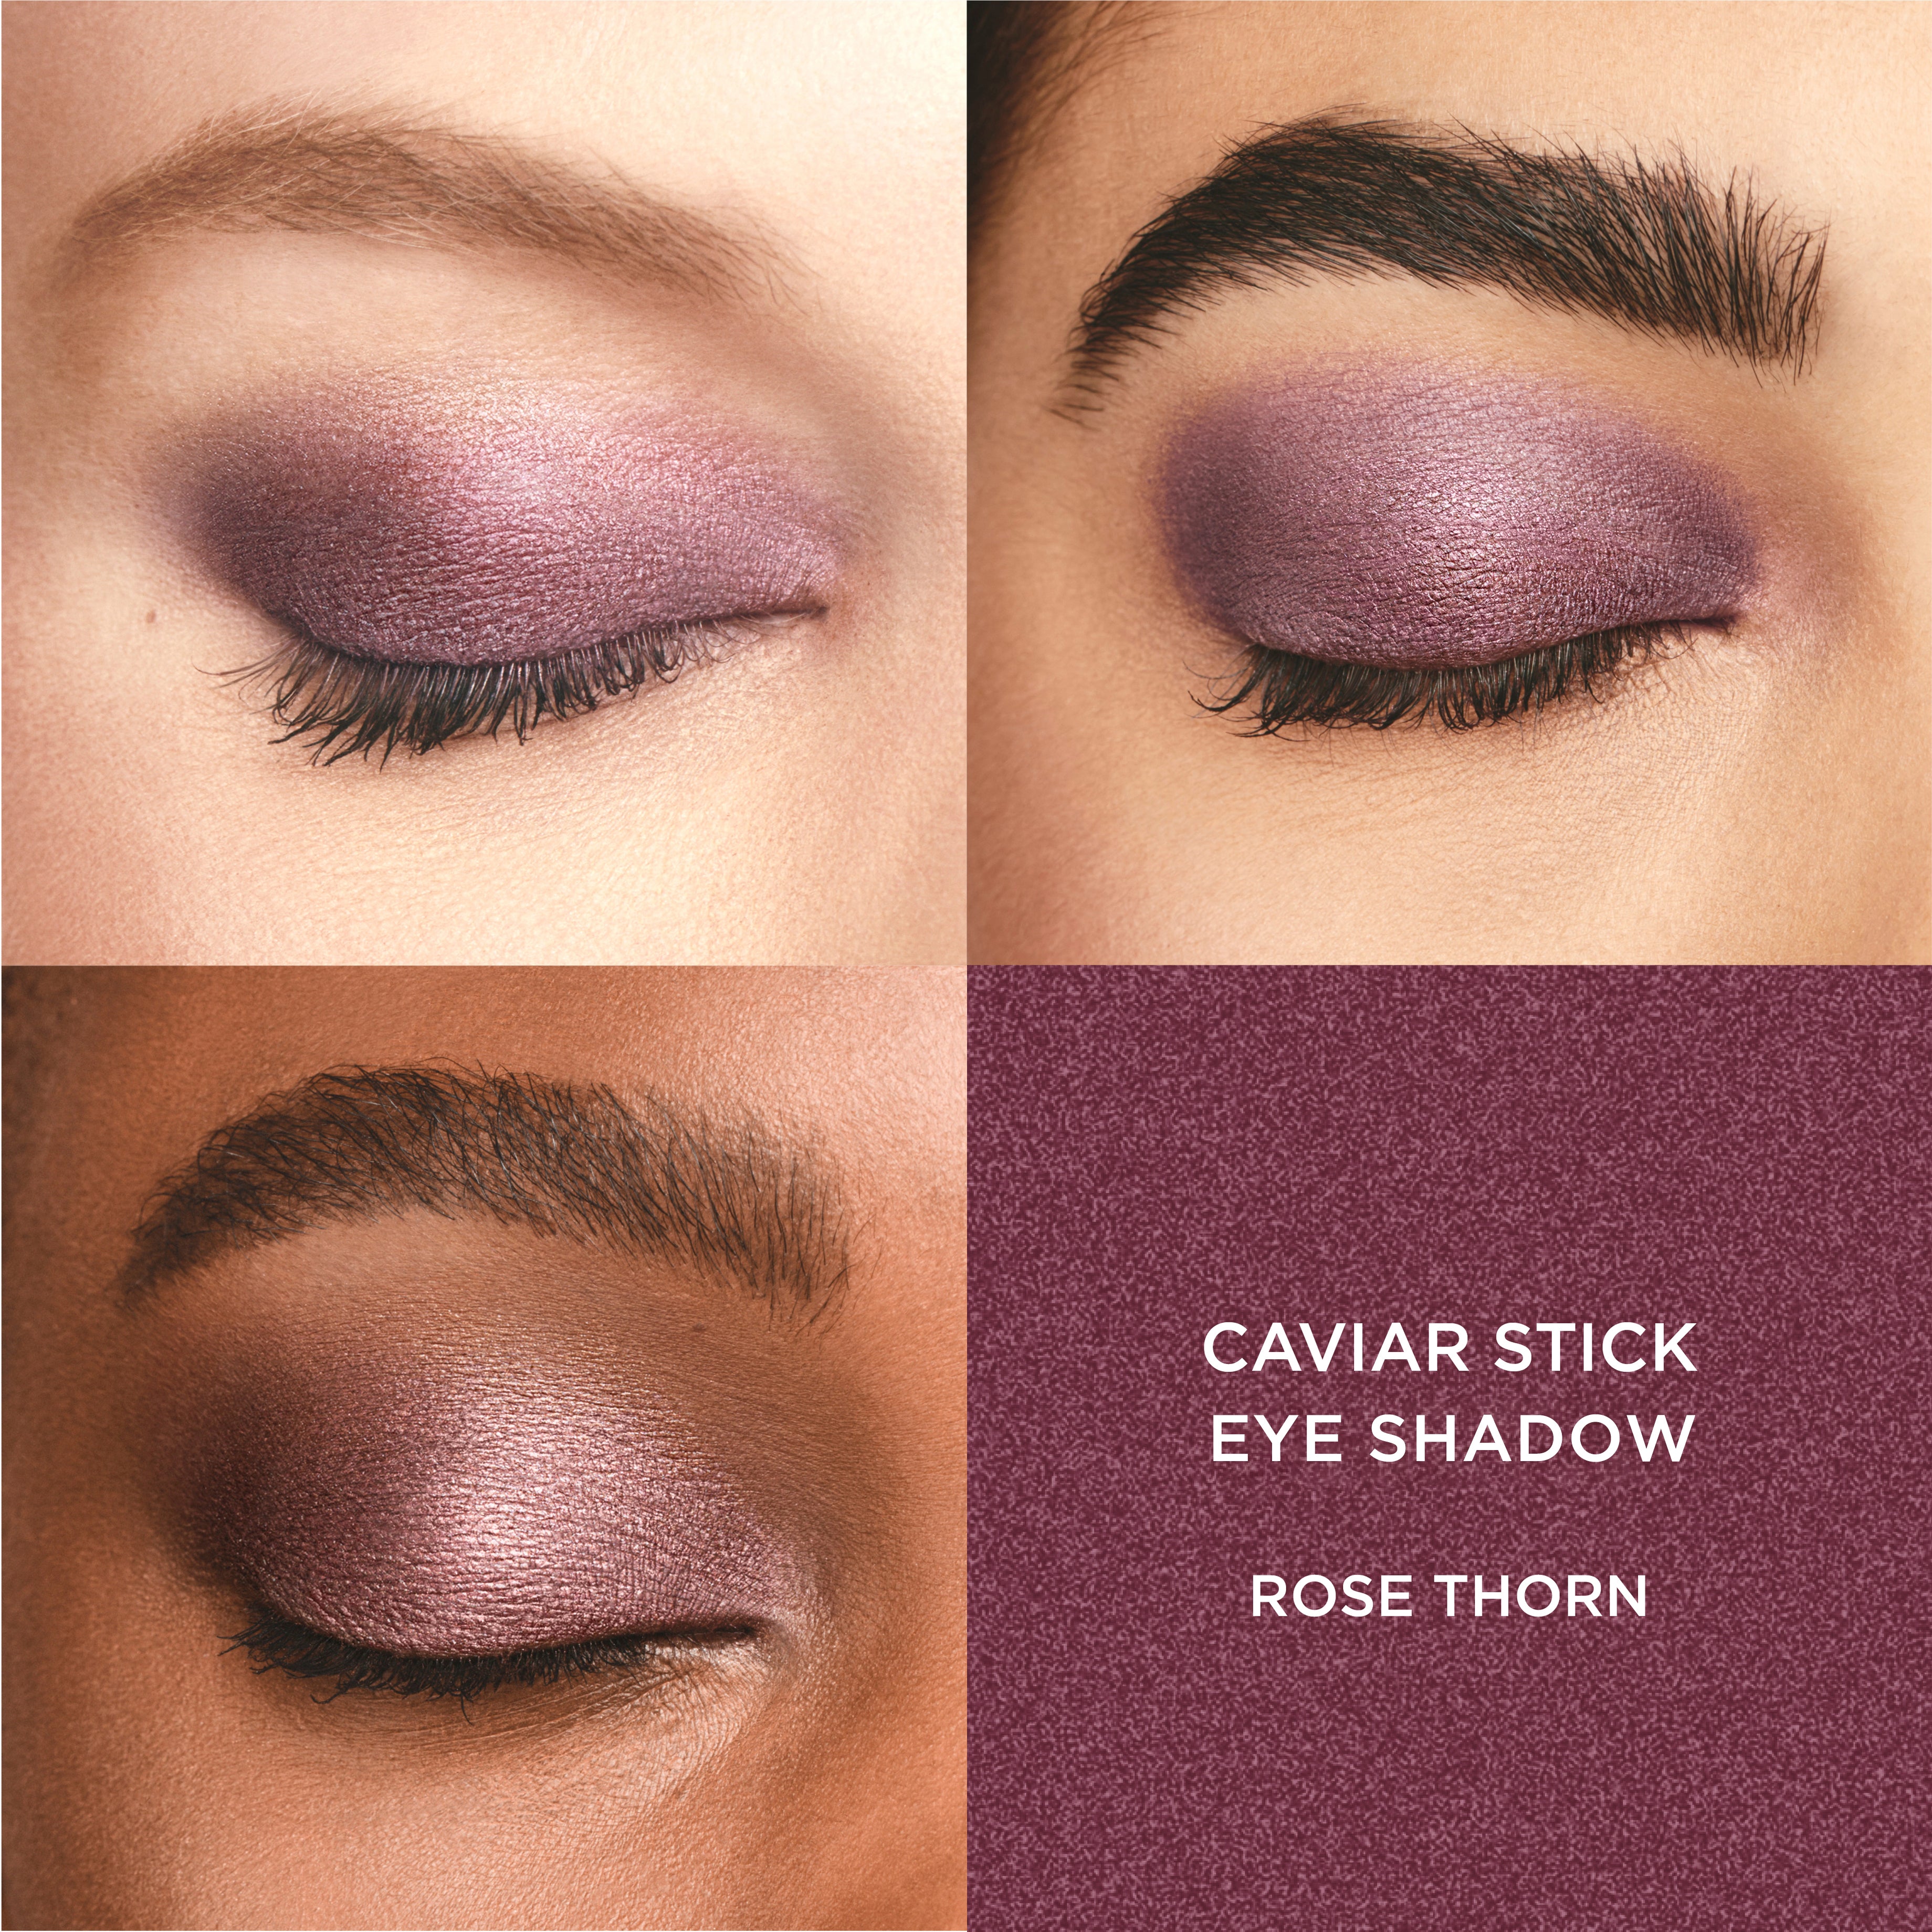 Stellar Shimmers Caviar Stick Eye Shadow Trio